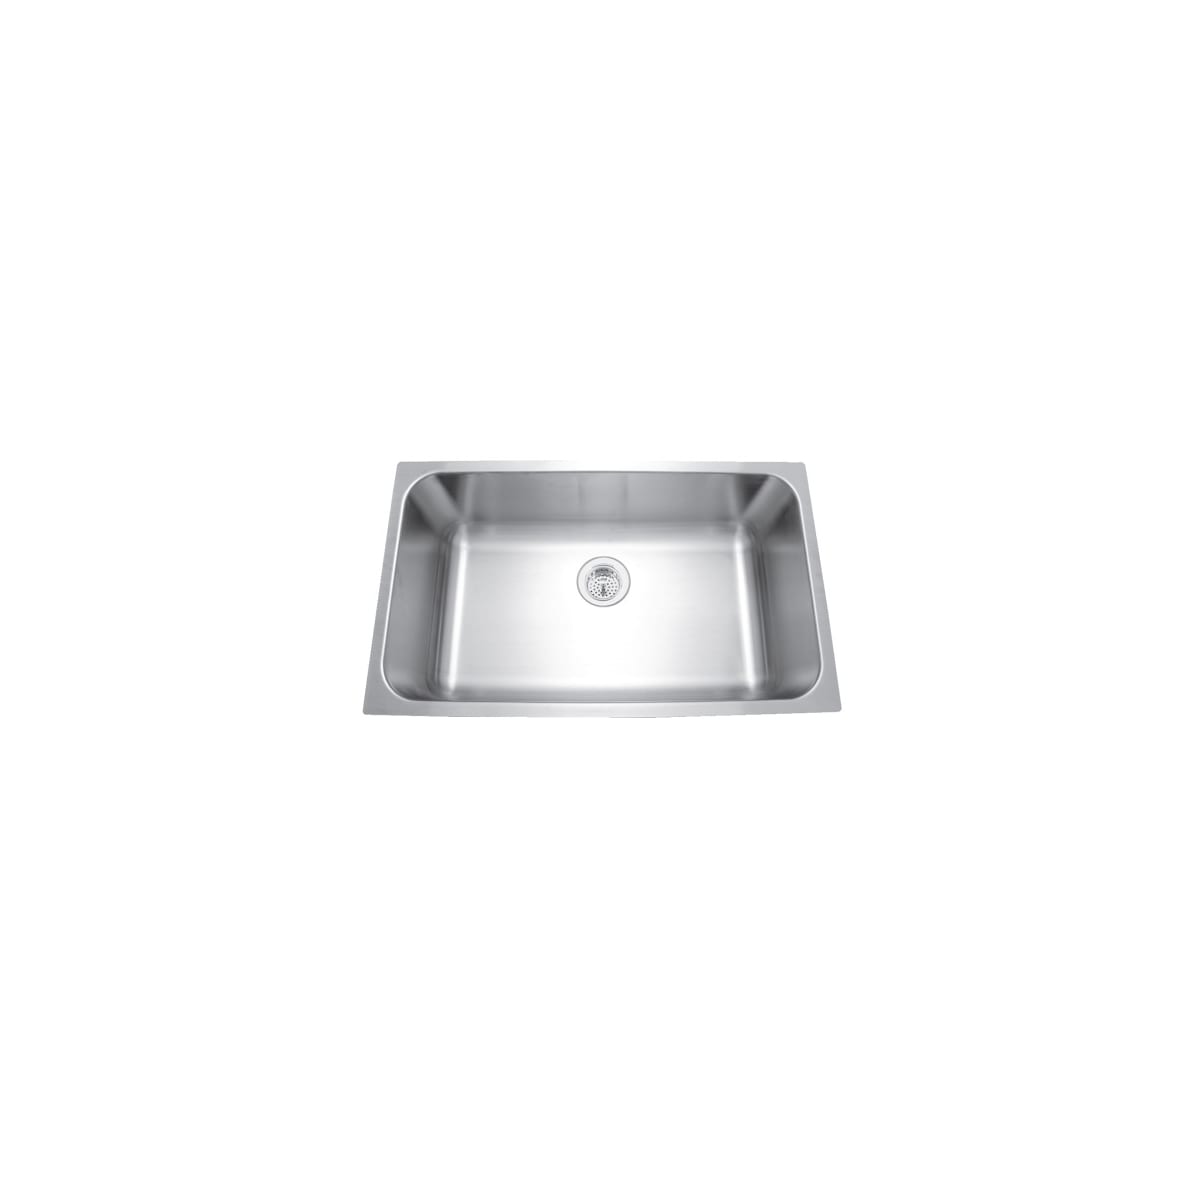 Signature Hardware 447789 Calverton 30 Drop in or Undermount Single Basin Stainless Steel Kitchen Sink